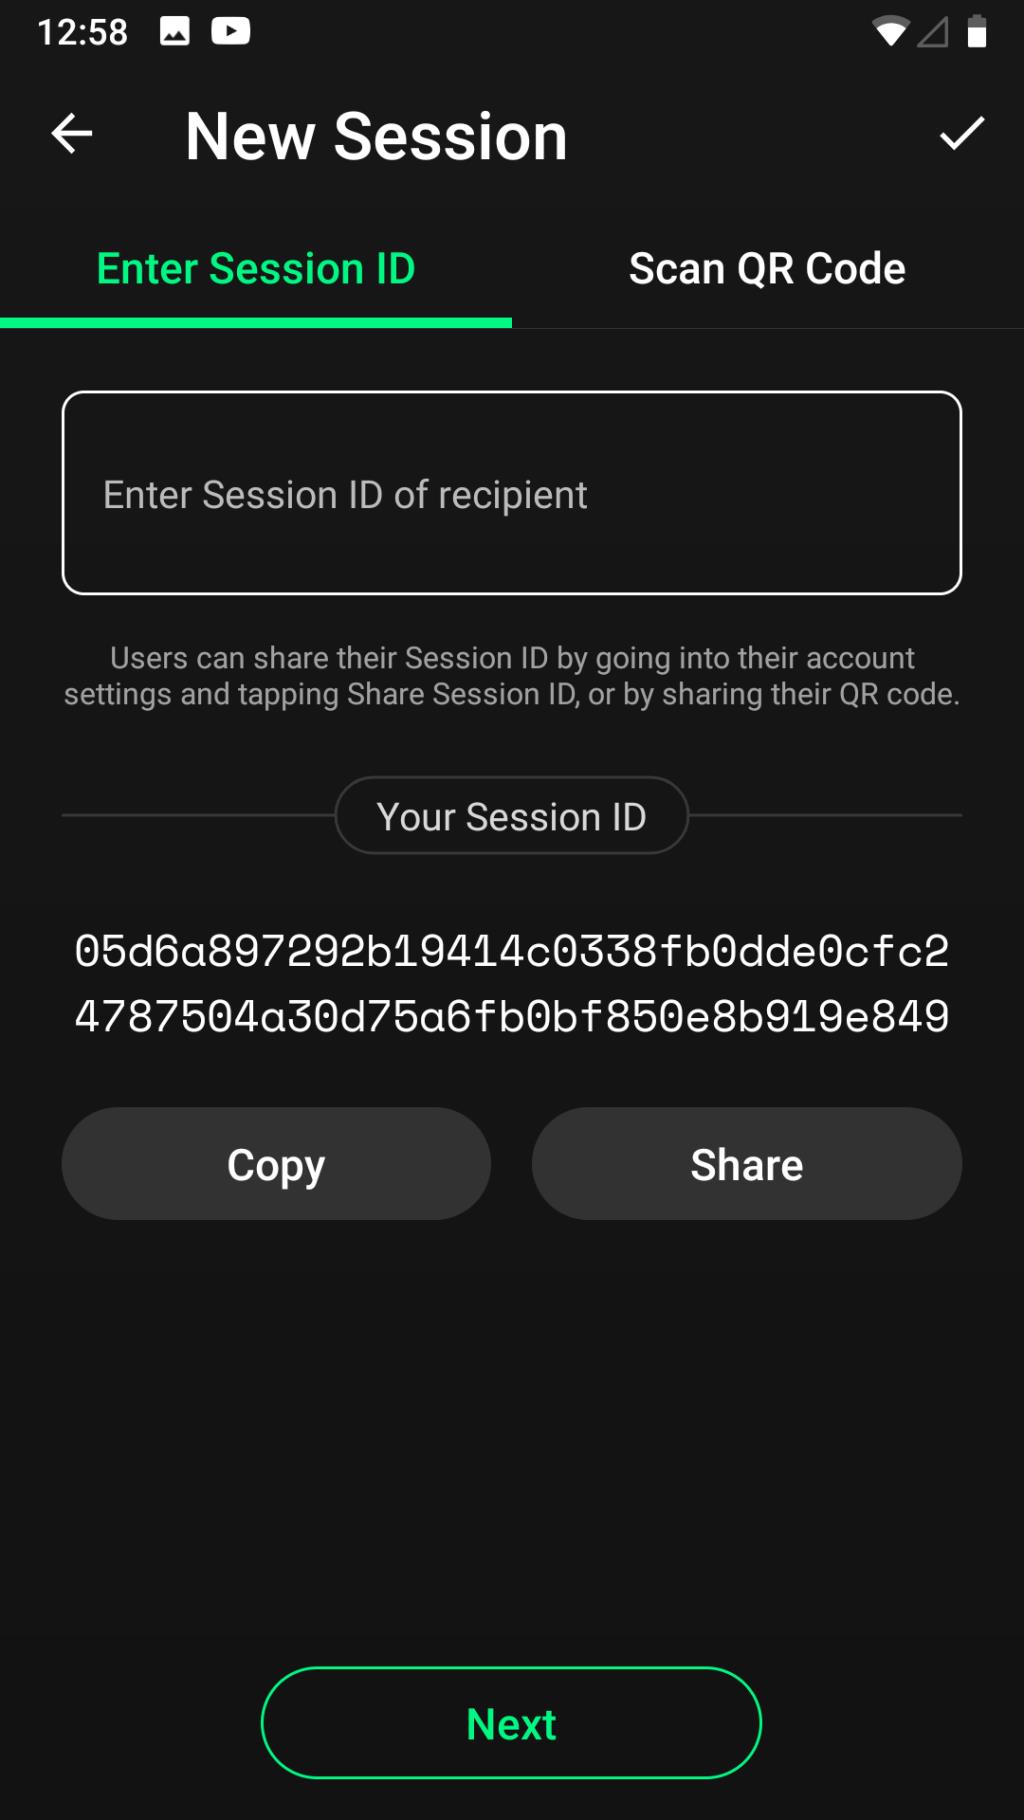 EU의 입법 E2E 암호화 드라이브가 암호화된 메시징 앱에 의미하는 것